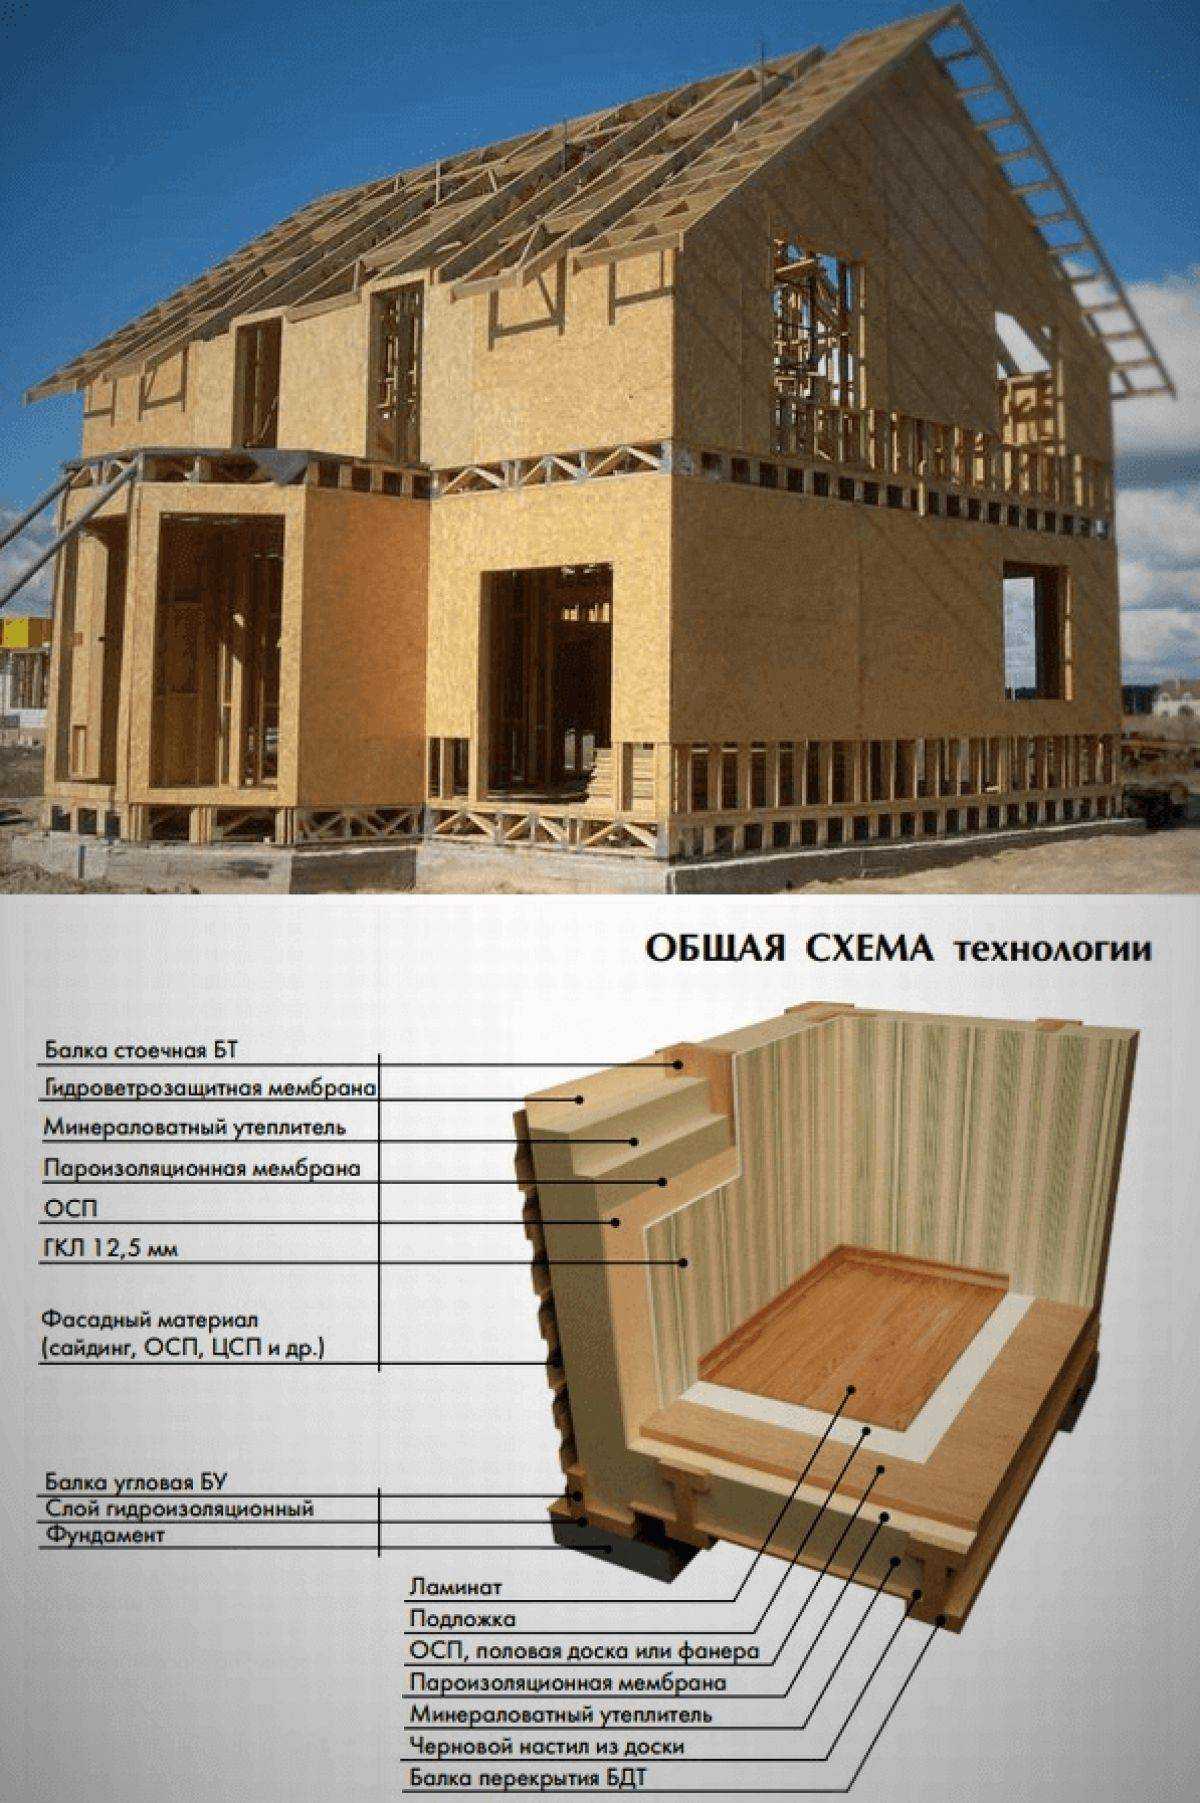 Финские дома: фото сборных, модульных, щитовых, схема пирога стены, а также технология строительства одноэтажных и двухэтажных деревянных каркасных конструкций